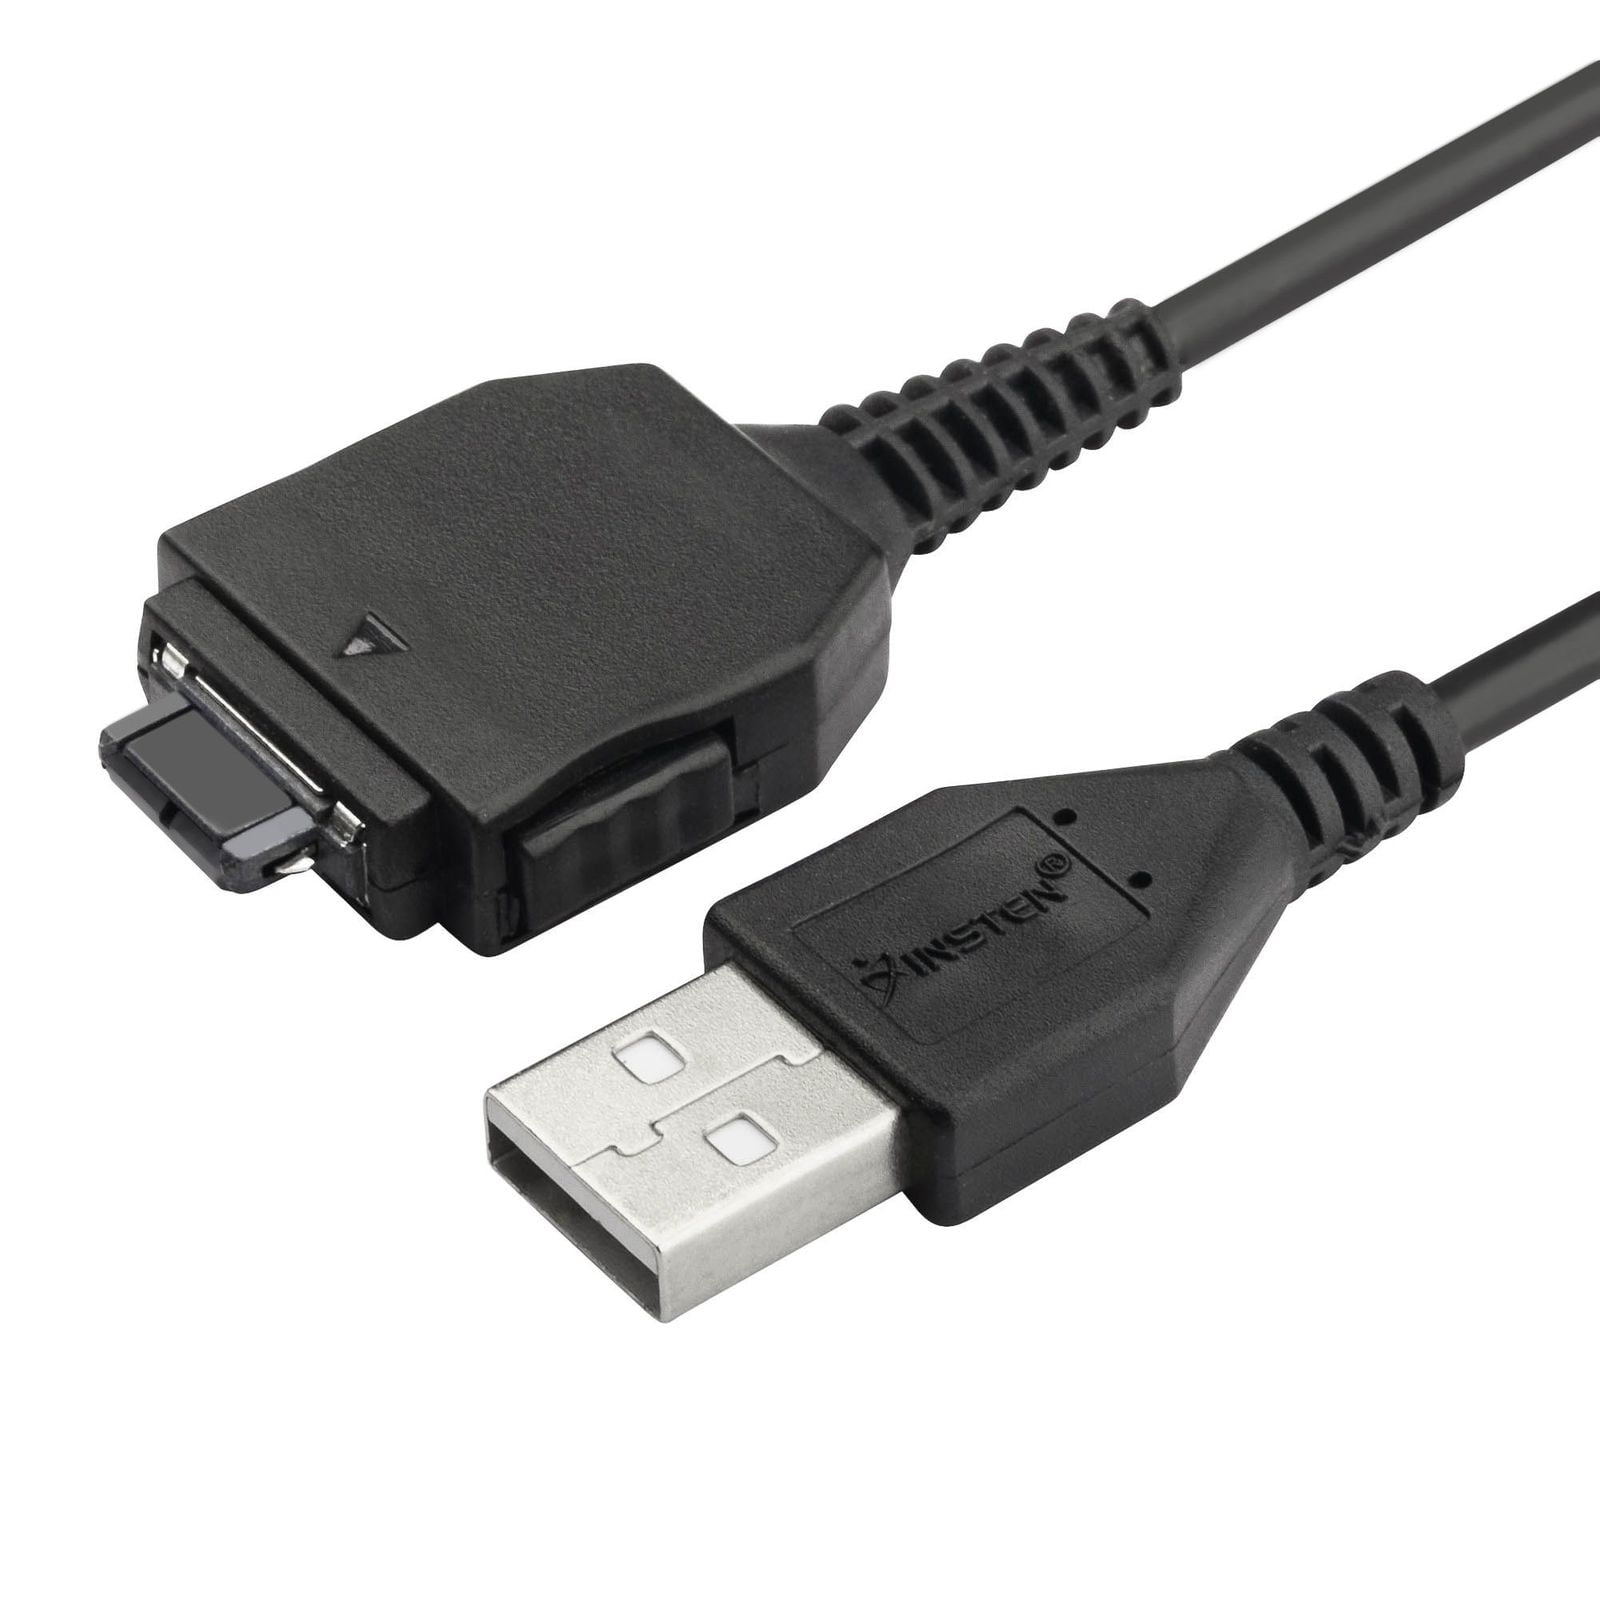 USB AV Kabel für Sony Cybershot DSC-W150 W130 W120 W110 